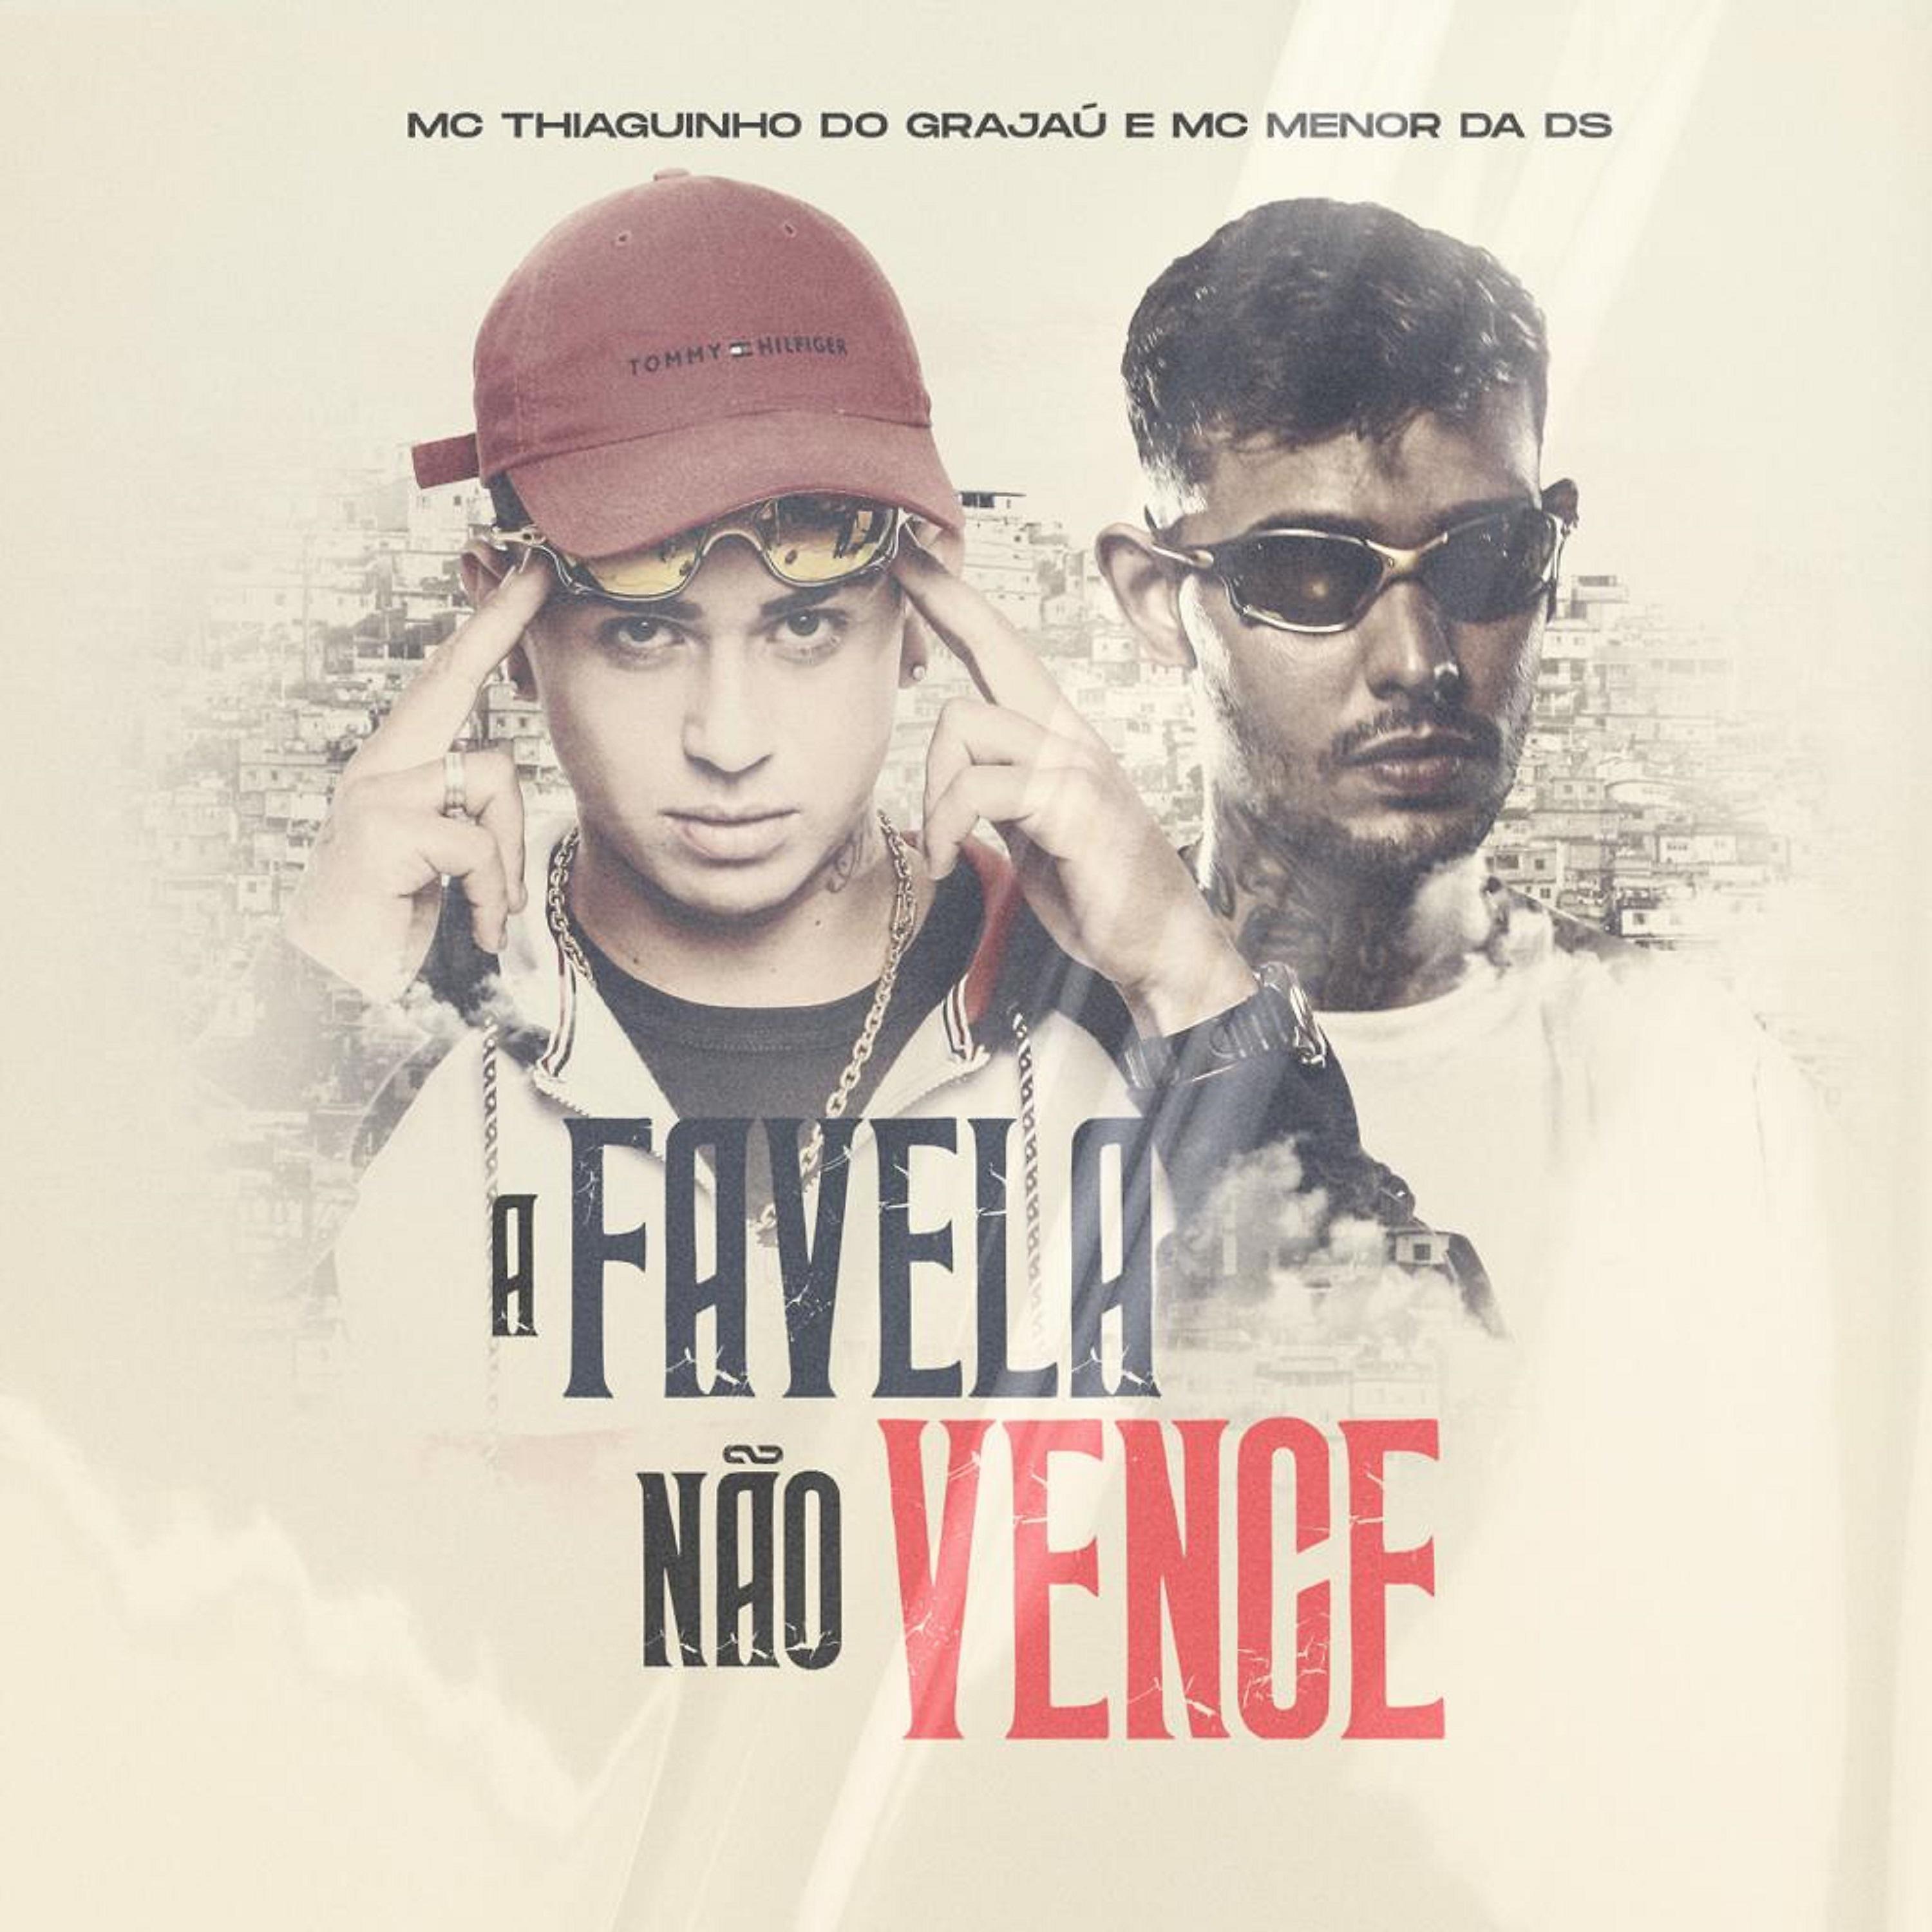 Постер альбома A Favela Não Venceu